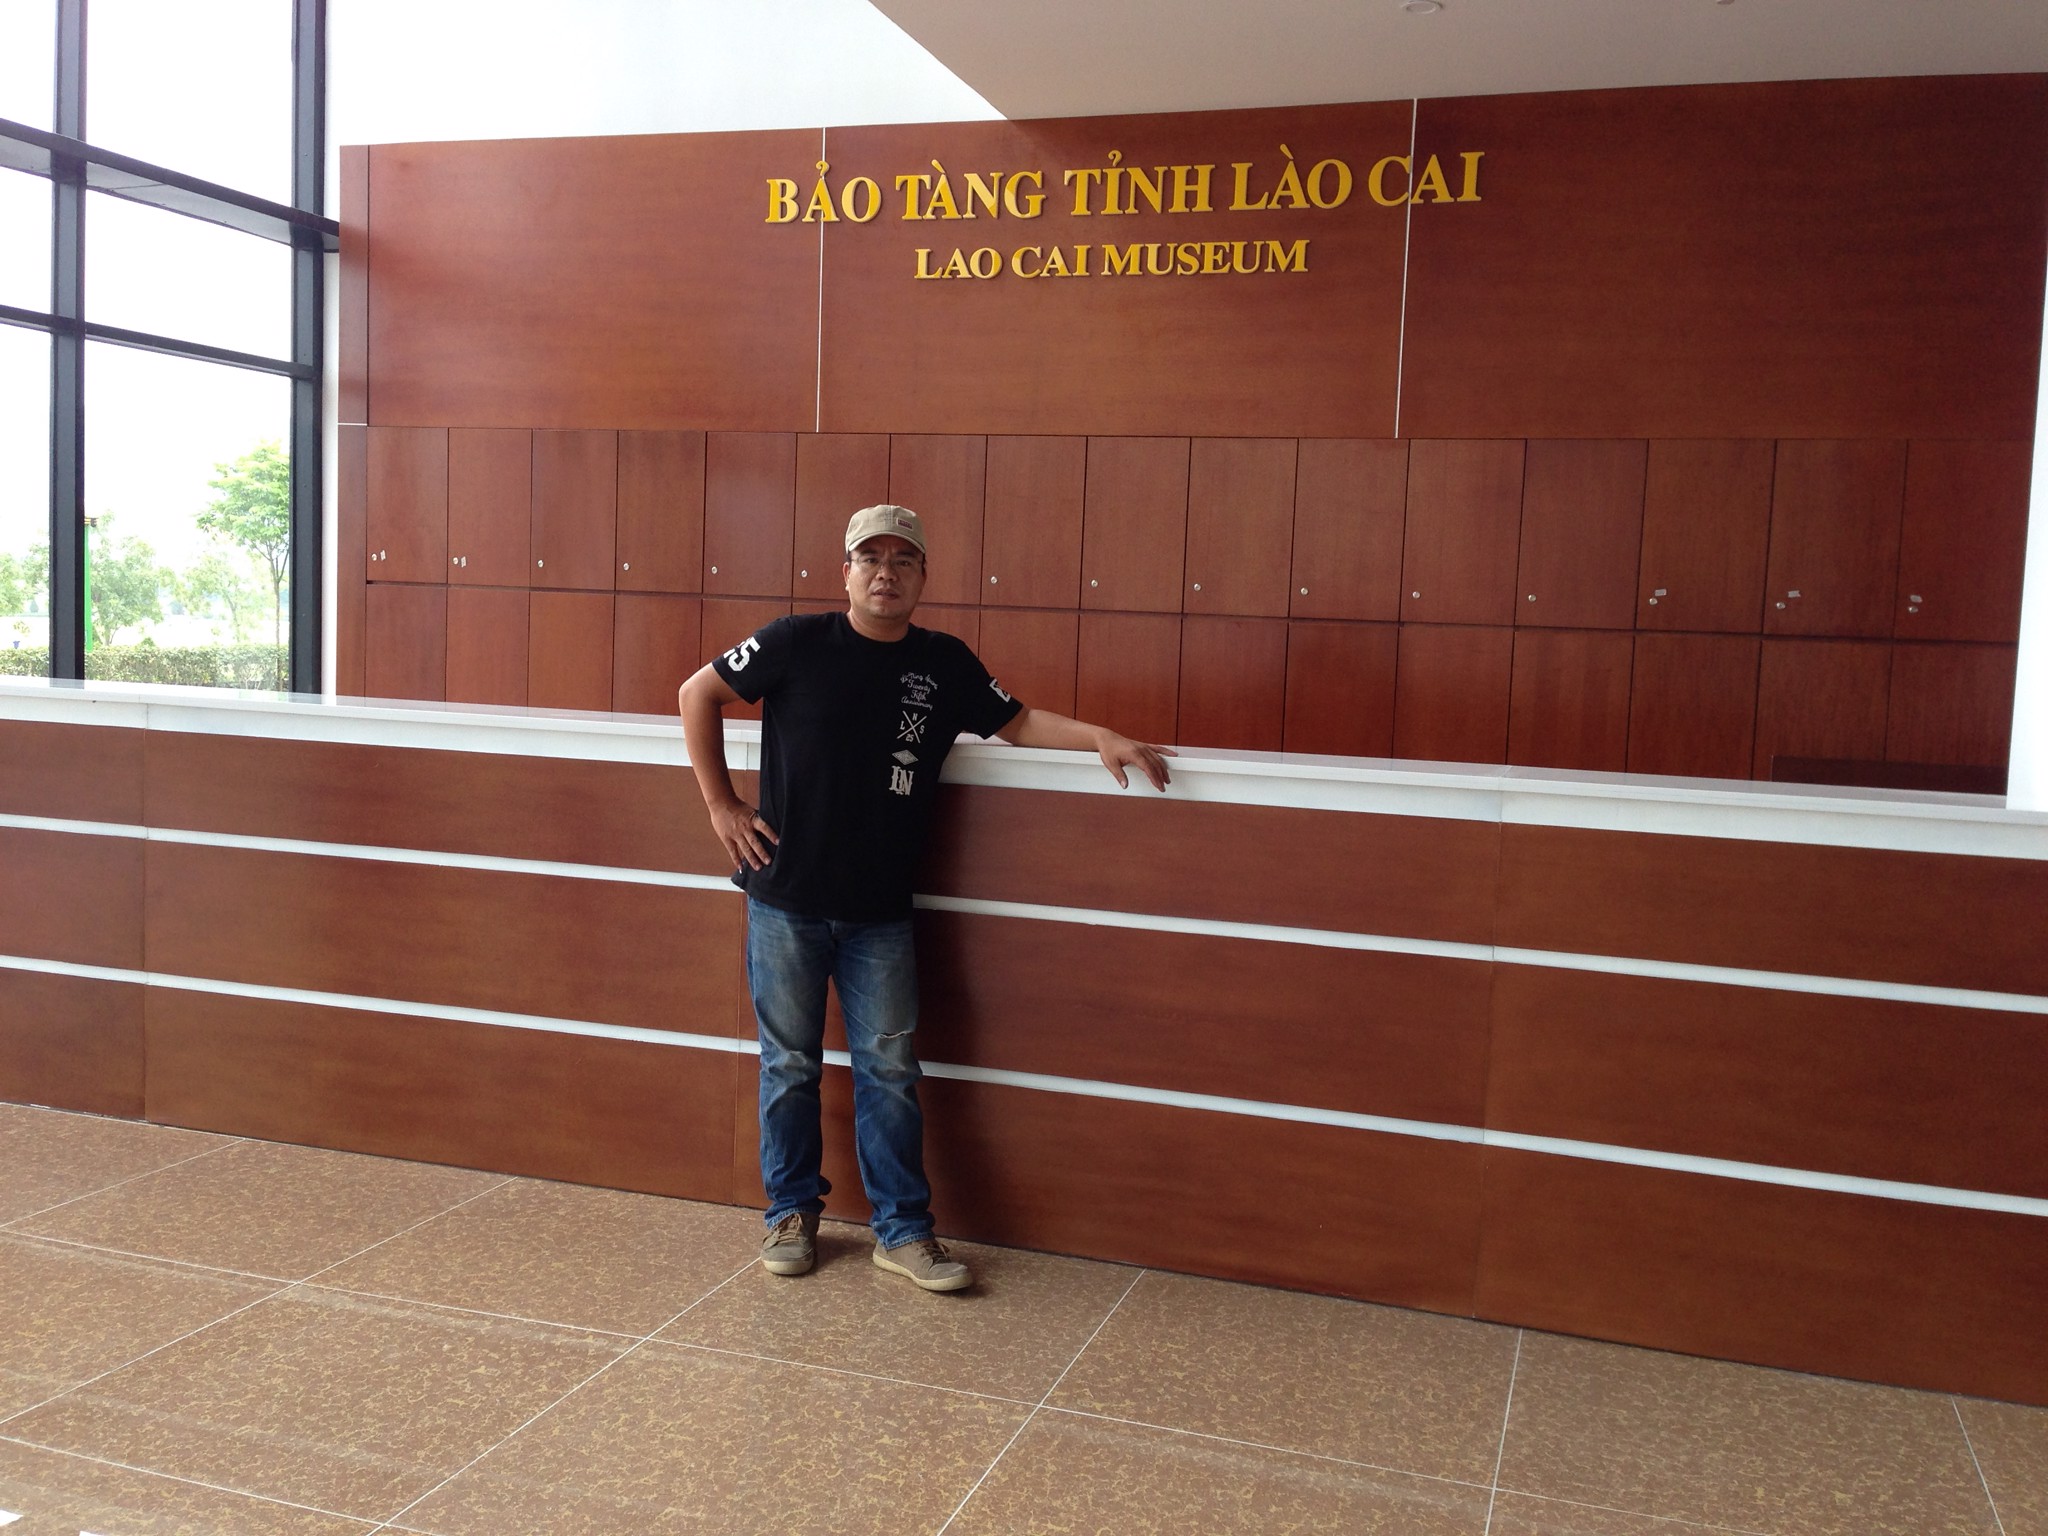 Thiết kế và xây dựng hệ thống điện nhẹ Bảo tàng tỉnh Lào Cai